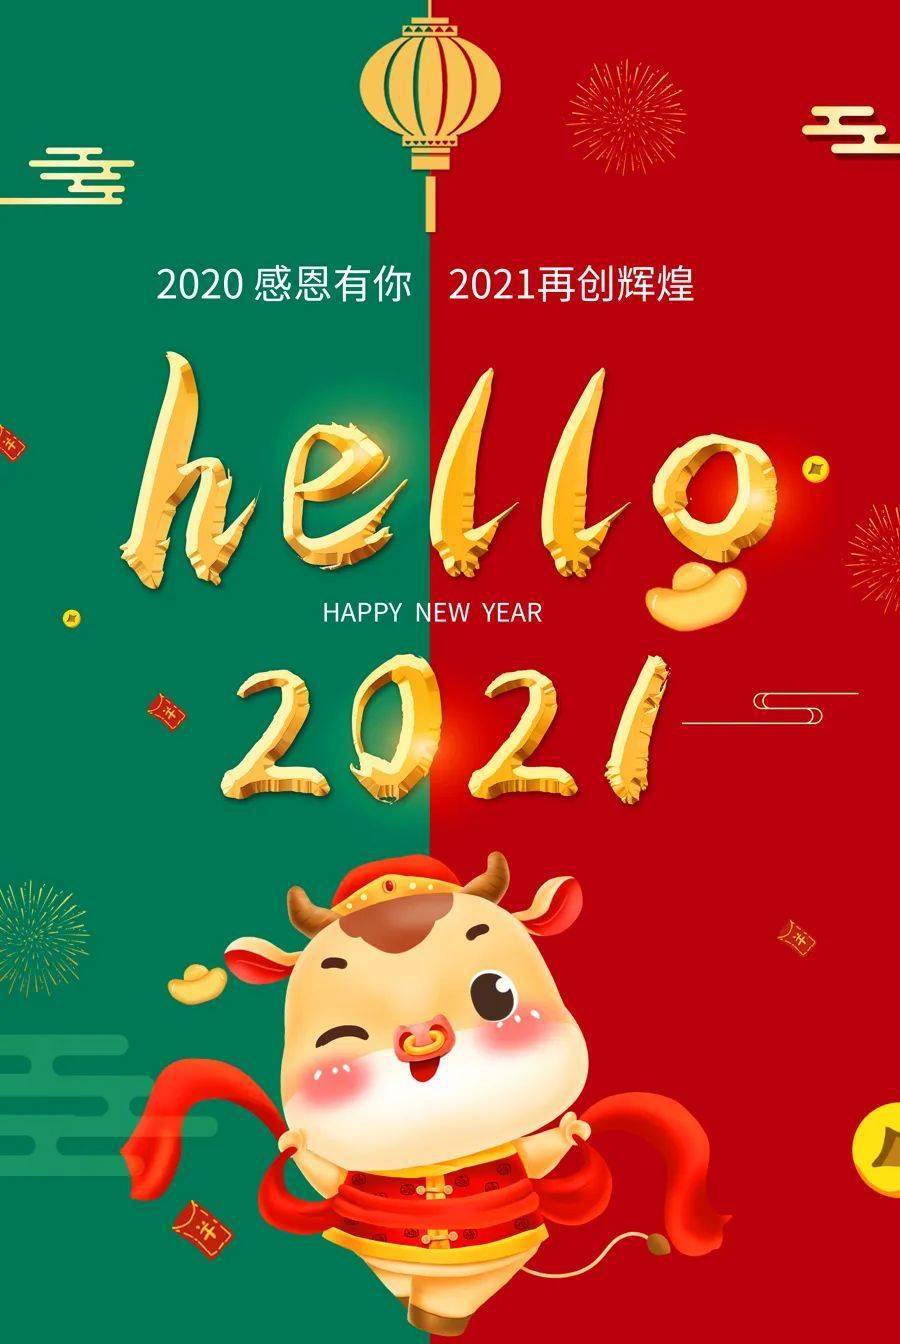 皇庭金门丨2020感恩有你丨2021再创辉煌